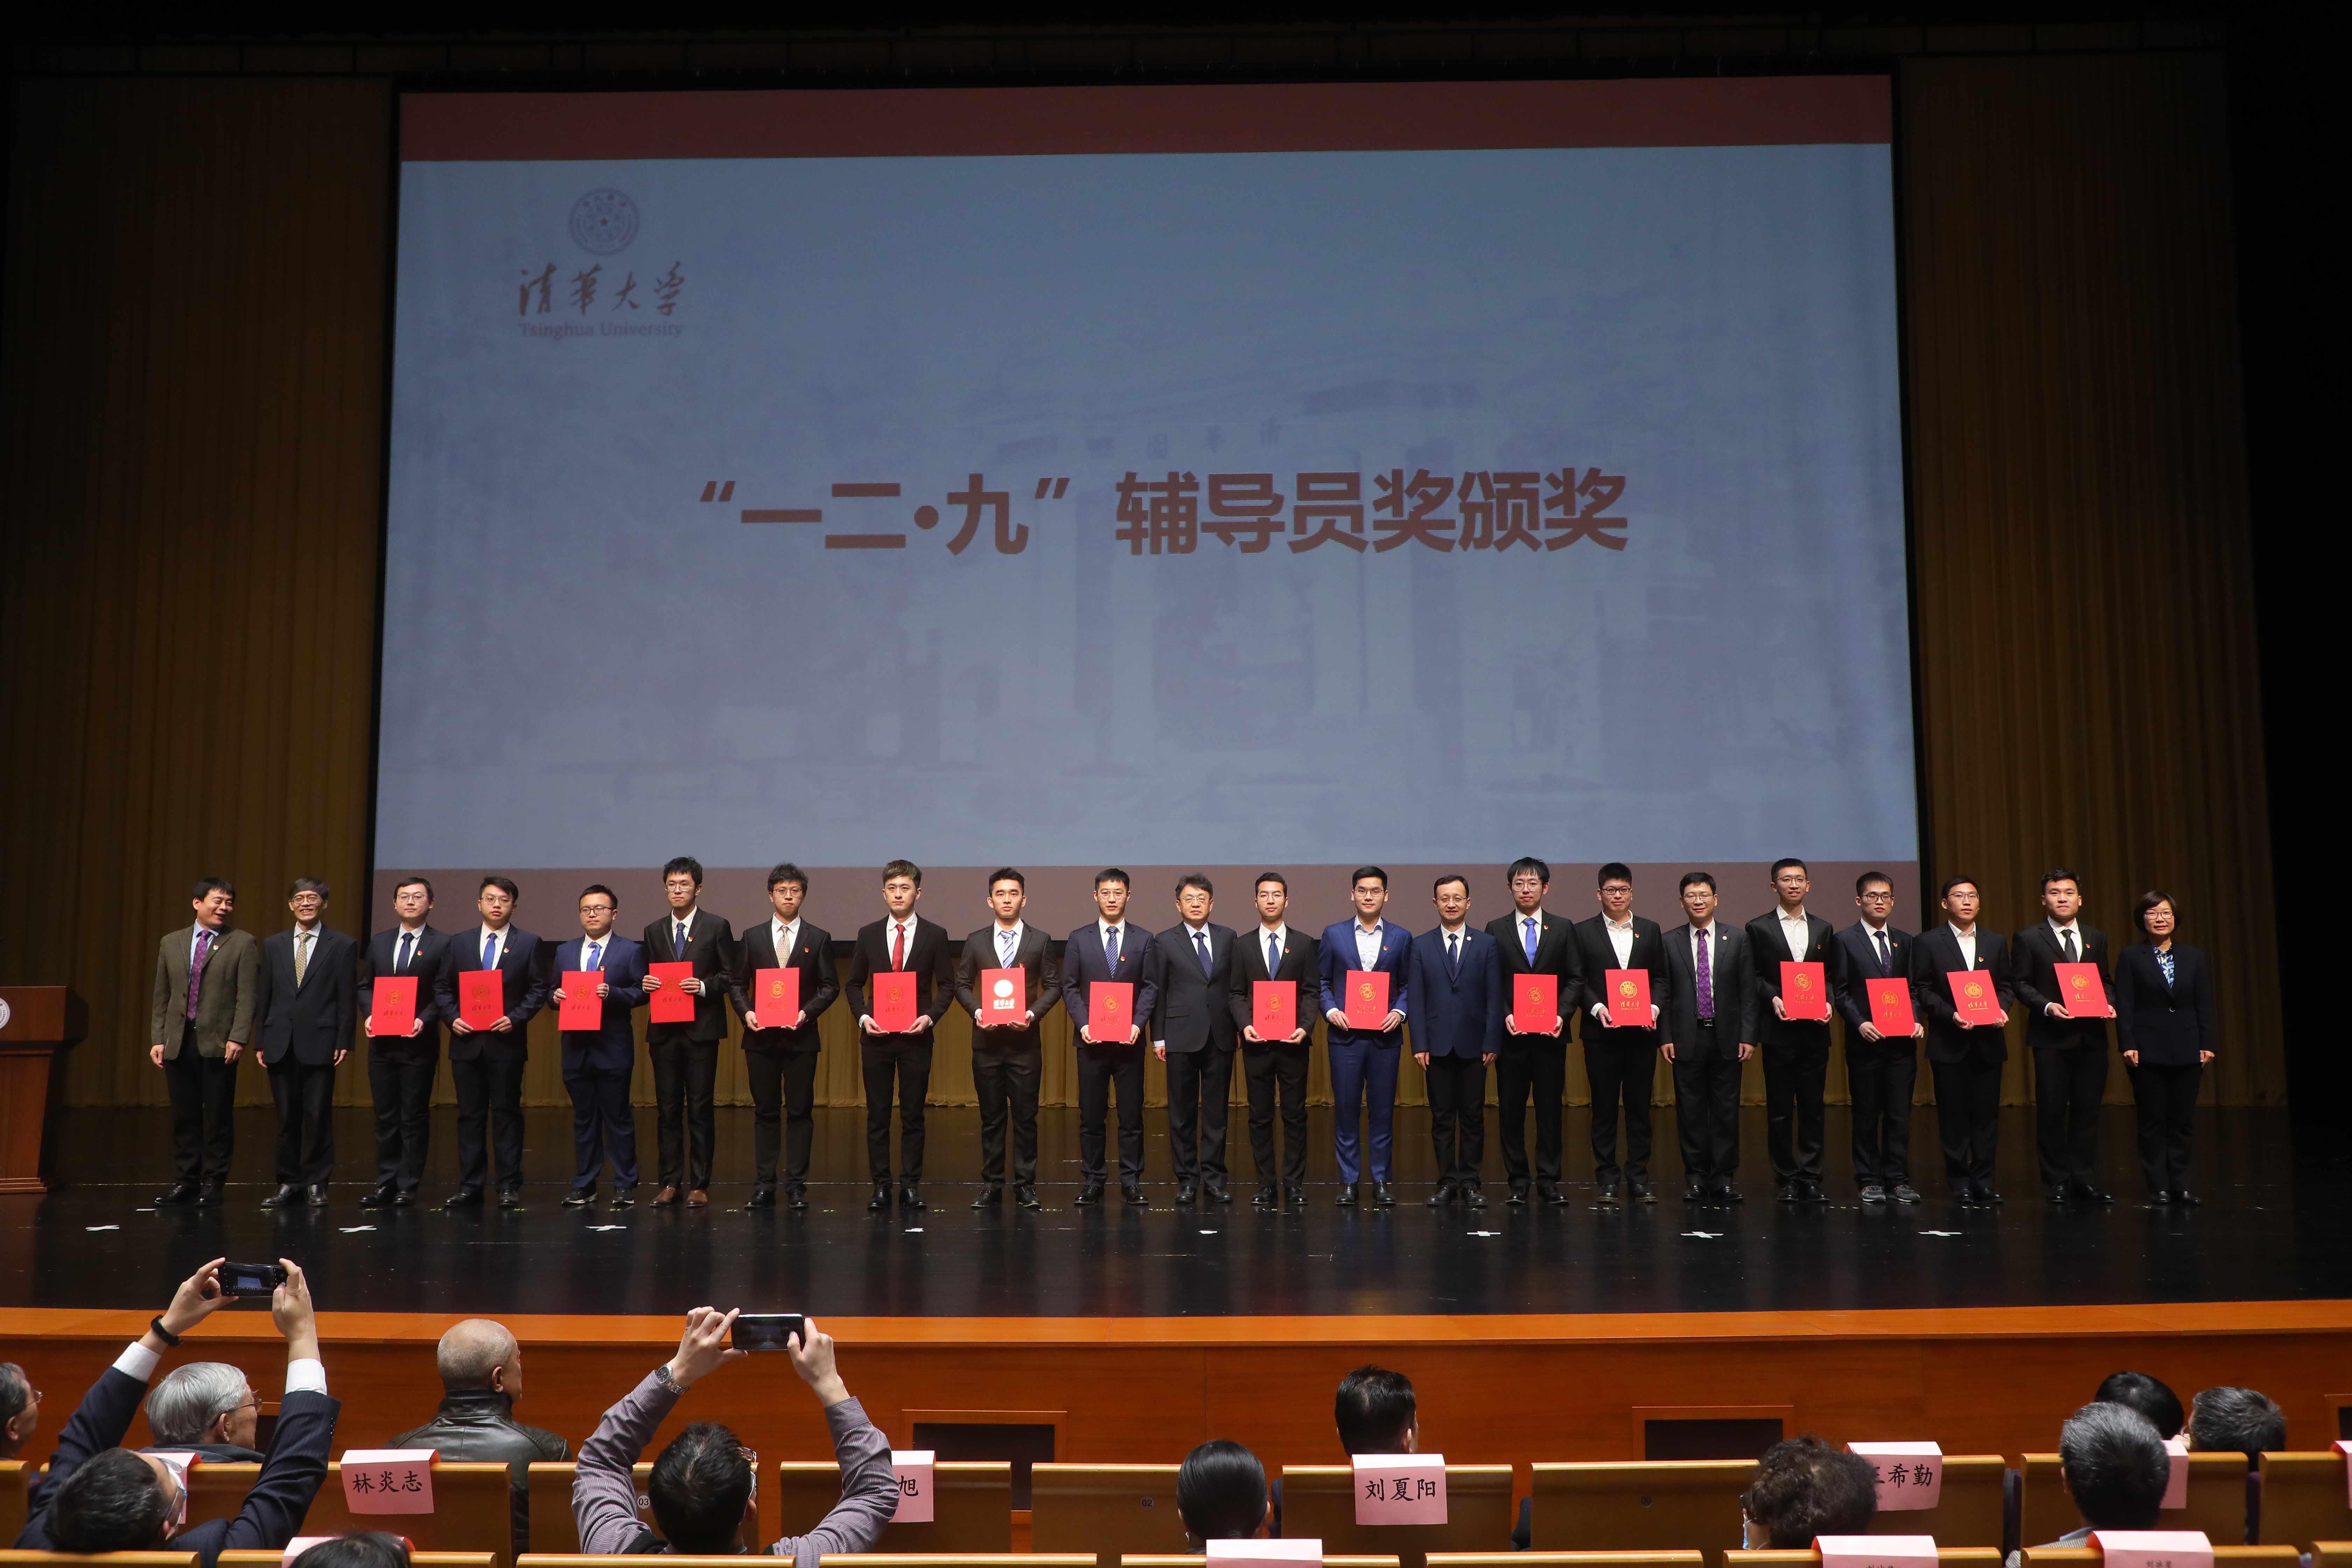 20211216-辅导员大会-常昊东-“一二·九”辅导员奖颁奖现场.JPG